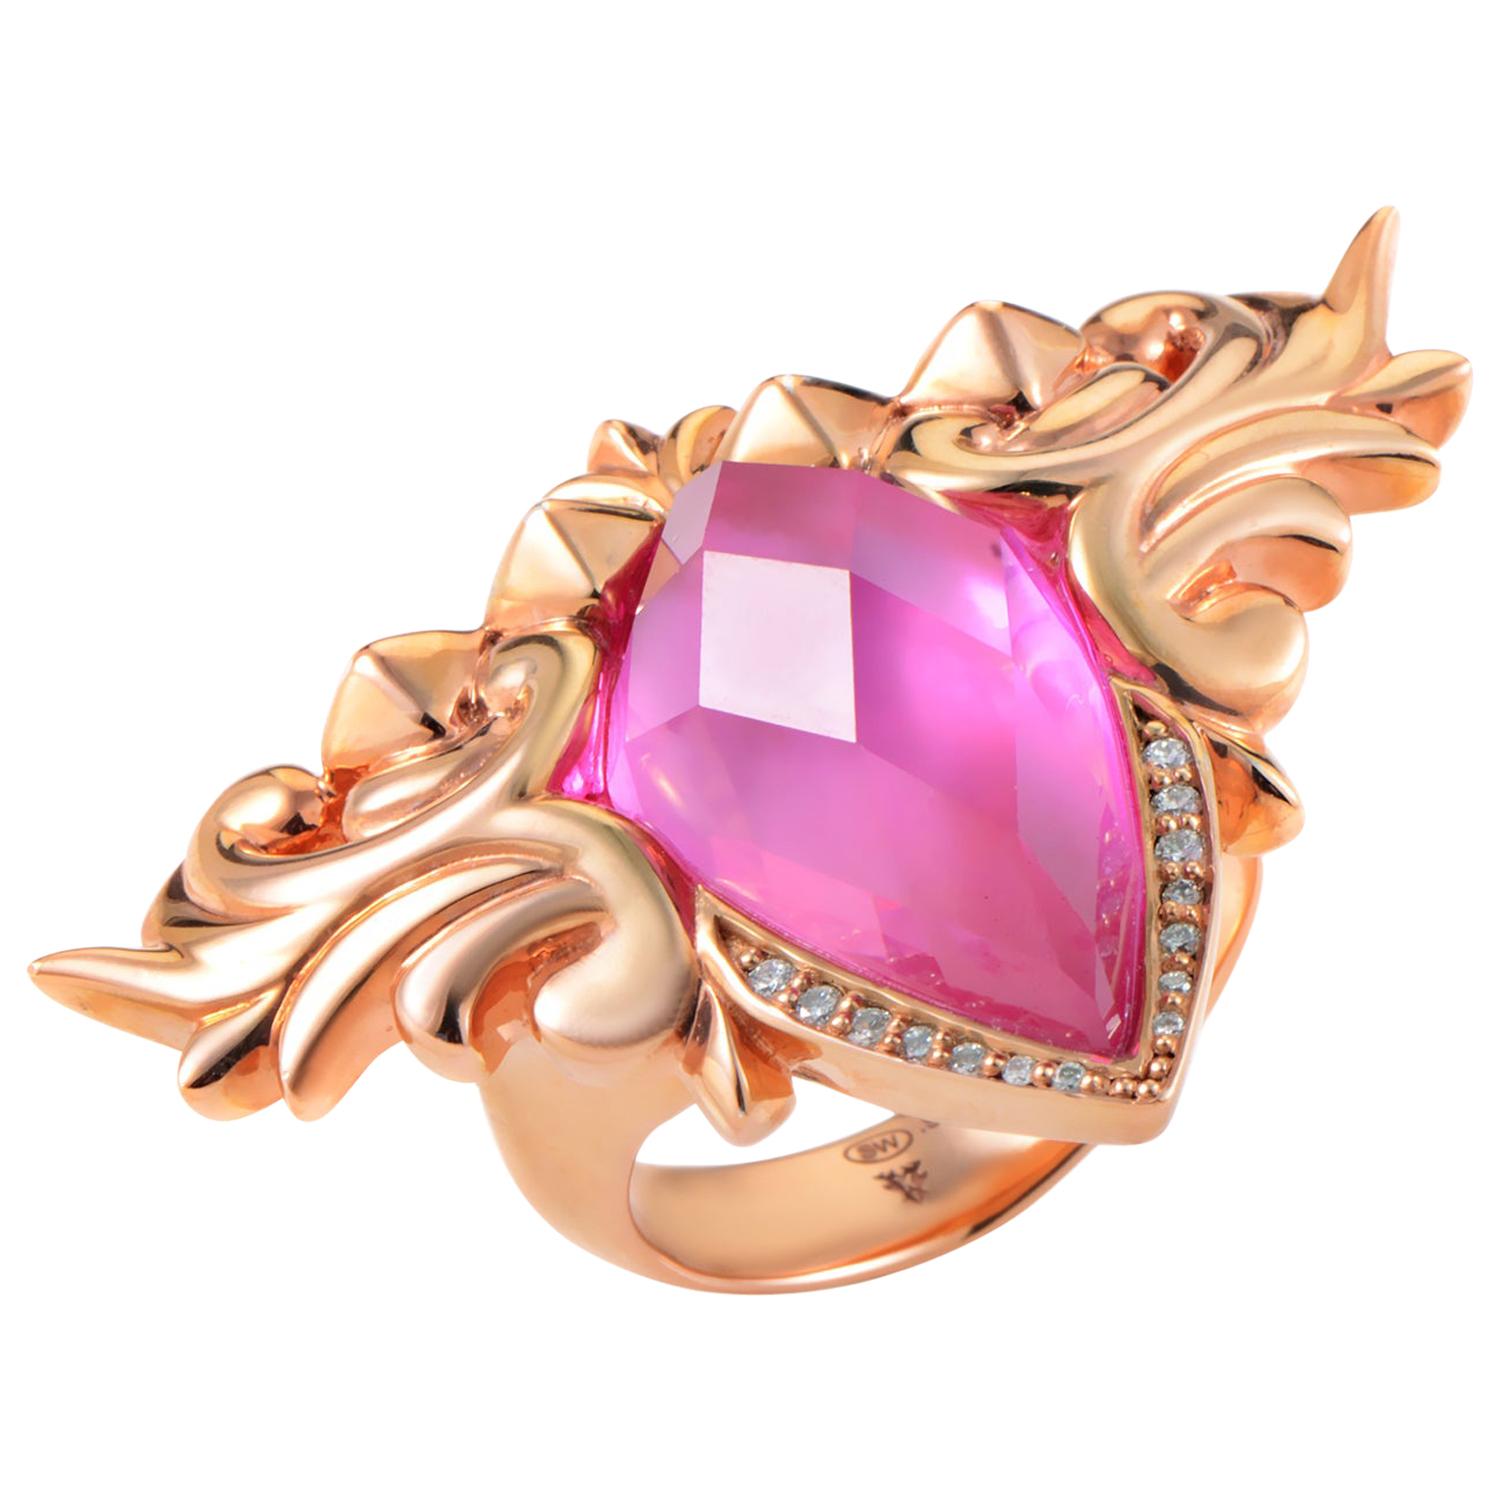 Stephen Webster Baroque Superstud Rose Gold-Plated Sterling Silver Gemstone Ring